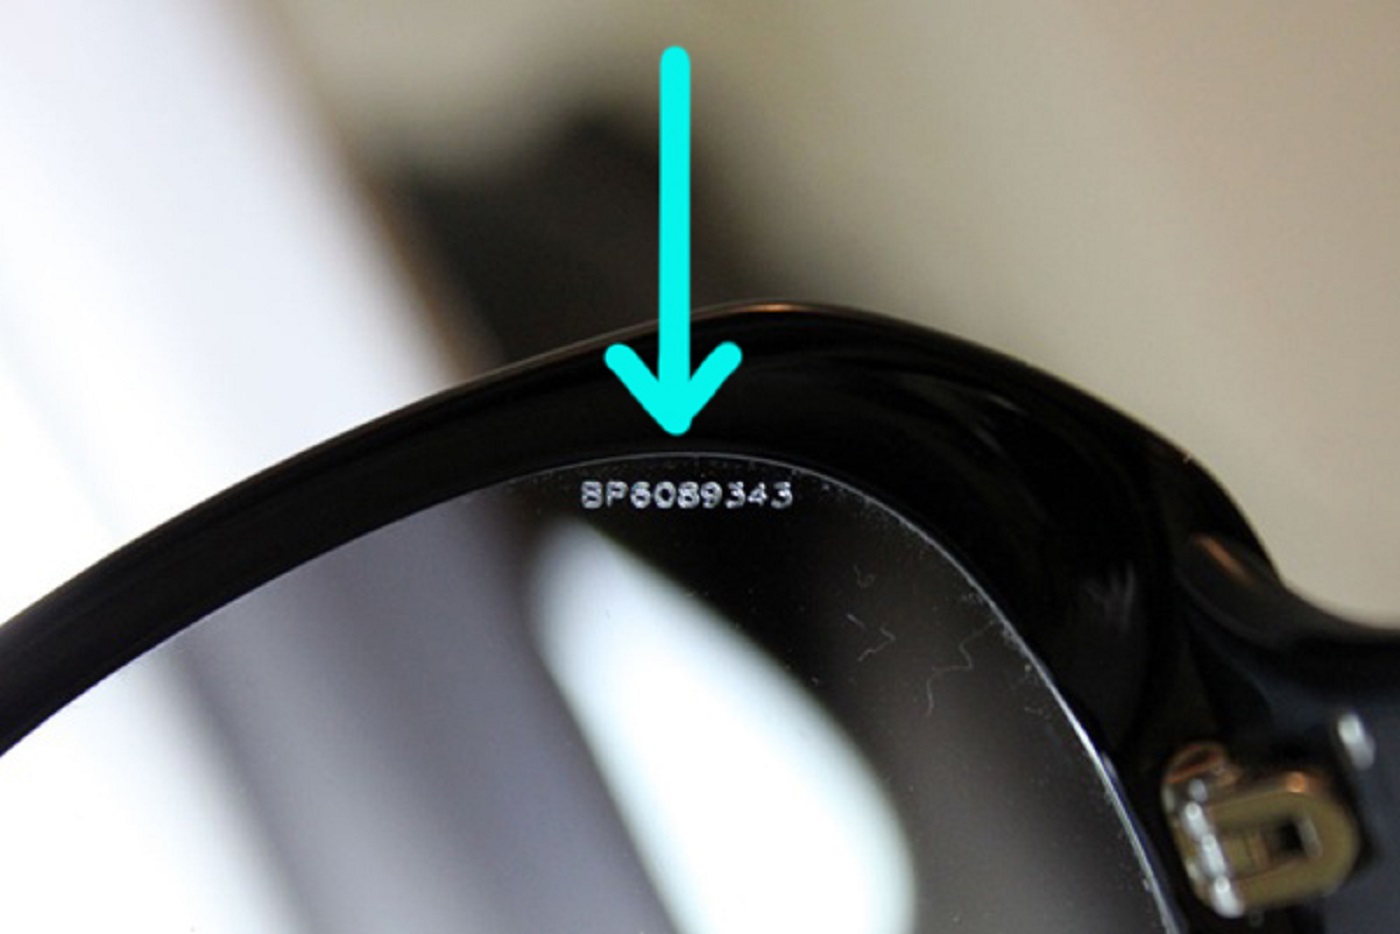 Occhiali da sole Prada, come riconoscere un originale da un falso - controllate le lenti